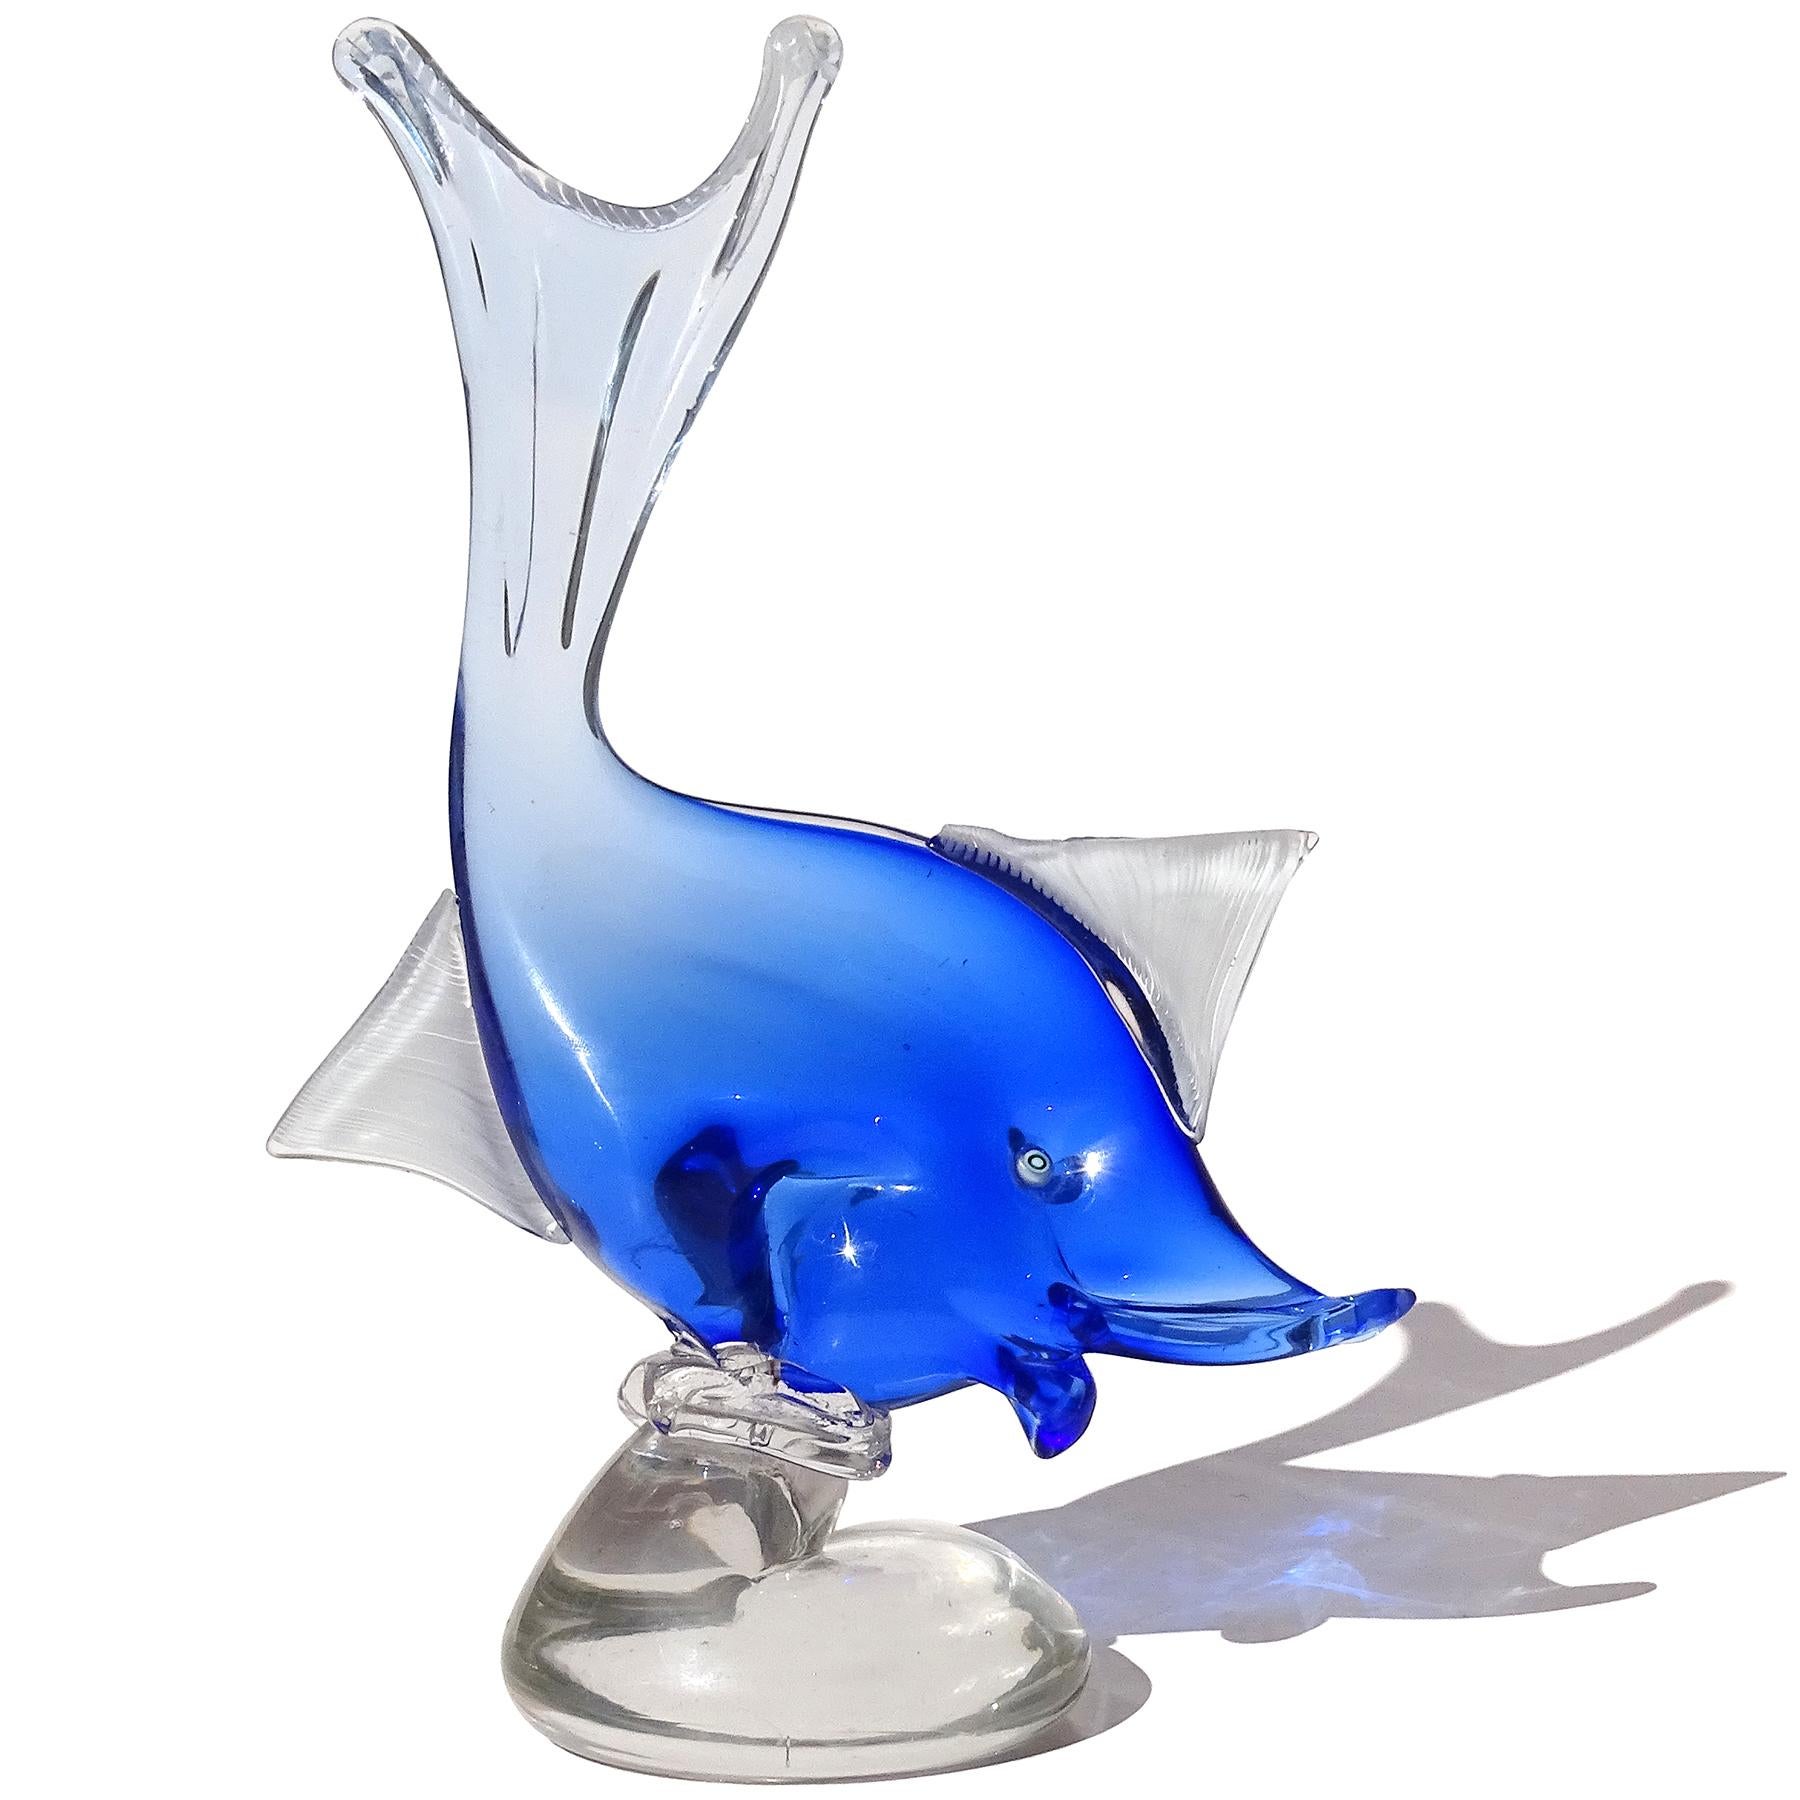 Magnifique sculpture vintage en verre d'art italien soufflé à la bouche Sommerso bleu saphir à clair, représentant un poisson sur un socle. Documenté au designer Dino Martens pour Aureliano Toso, vers les années 1950. Publié dans son livre (voir